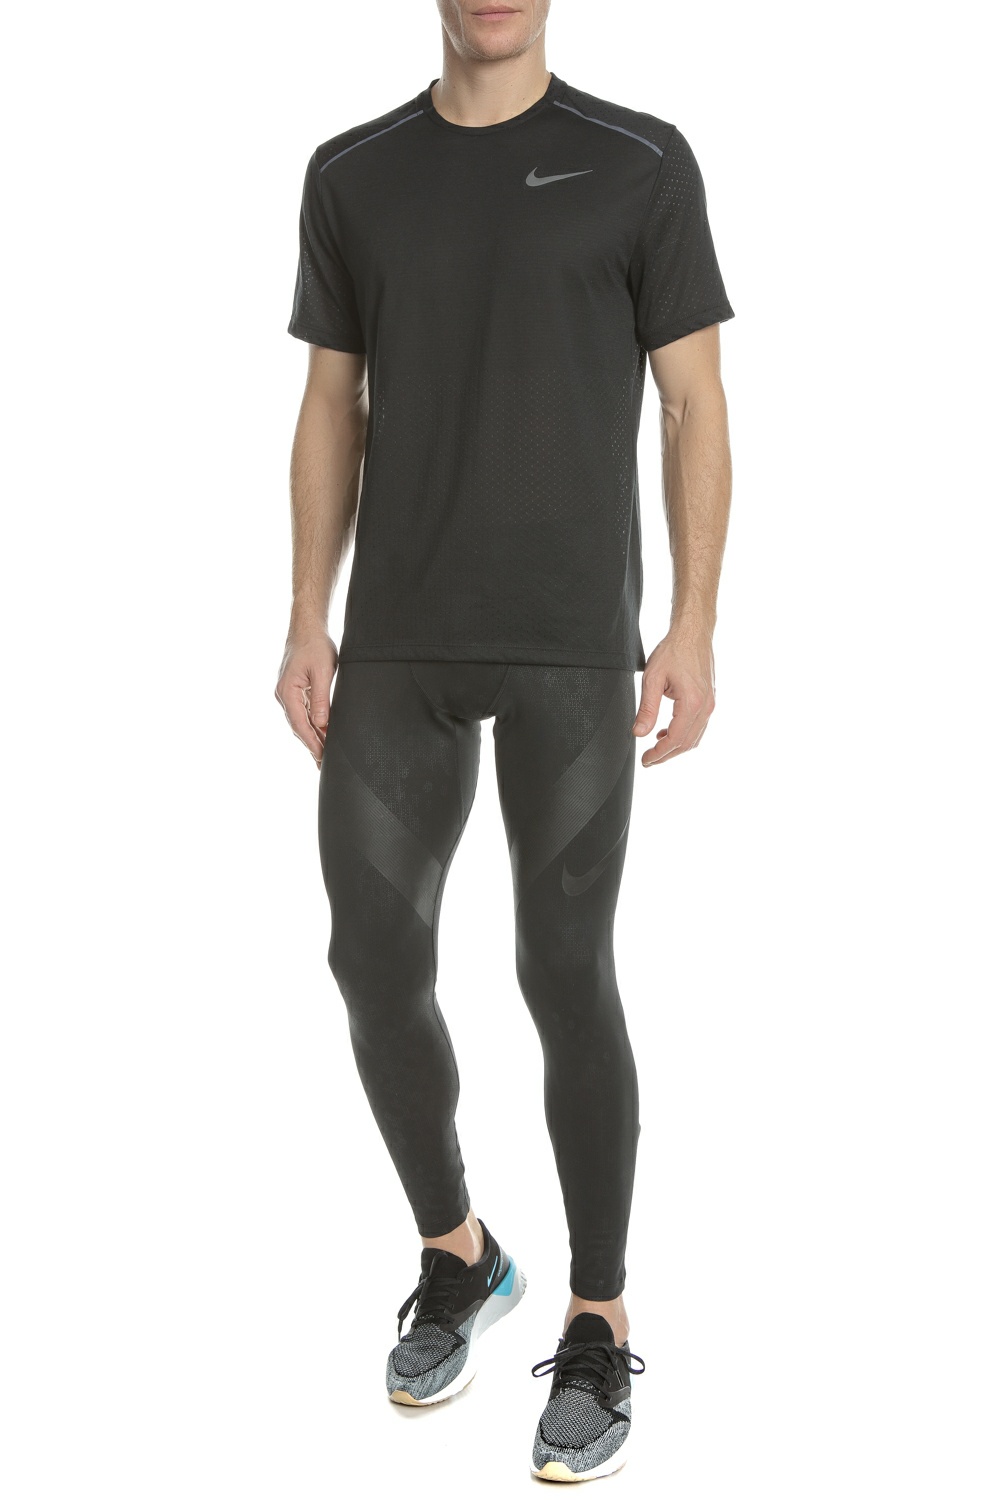 Ανδρικά/Ρούχα/Αθλητικά/Κολάν NIKE - Aνδρικό κολάν για τρέξιμο Nike Tech Power μαύρο